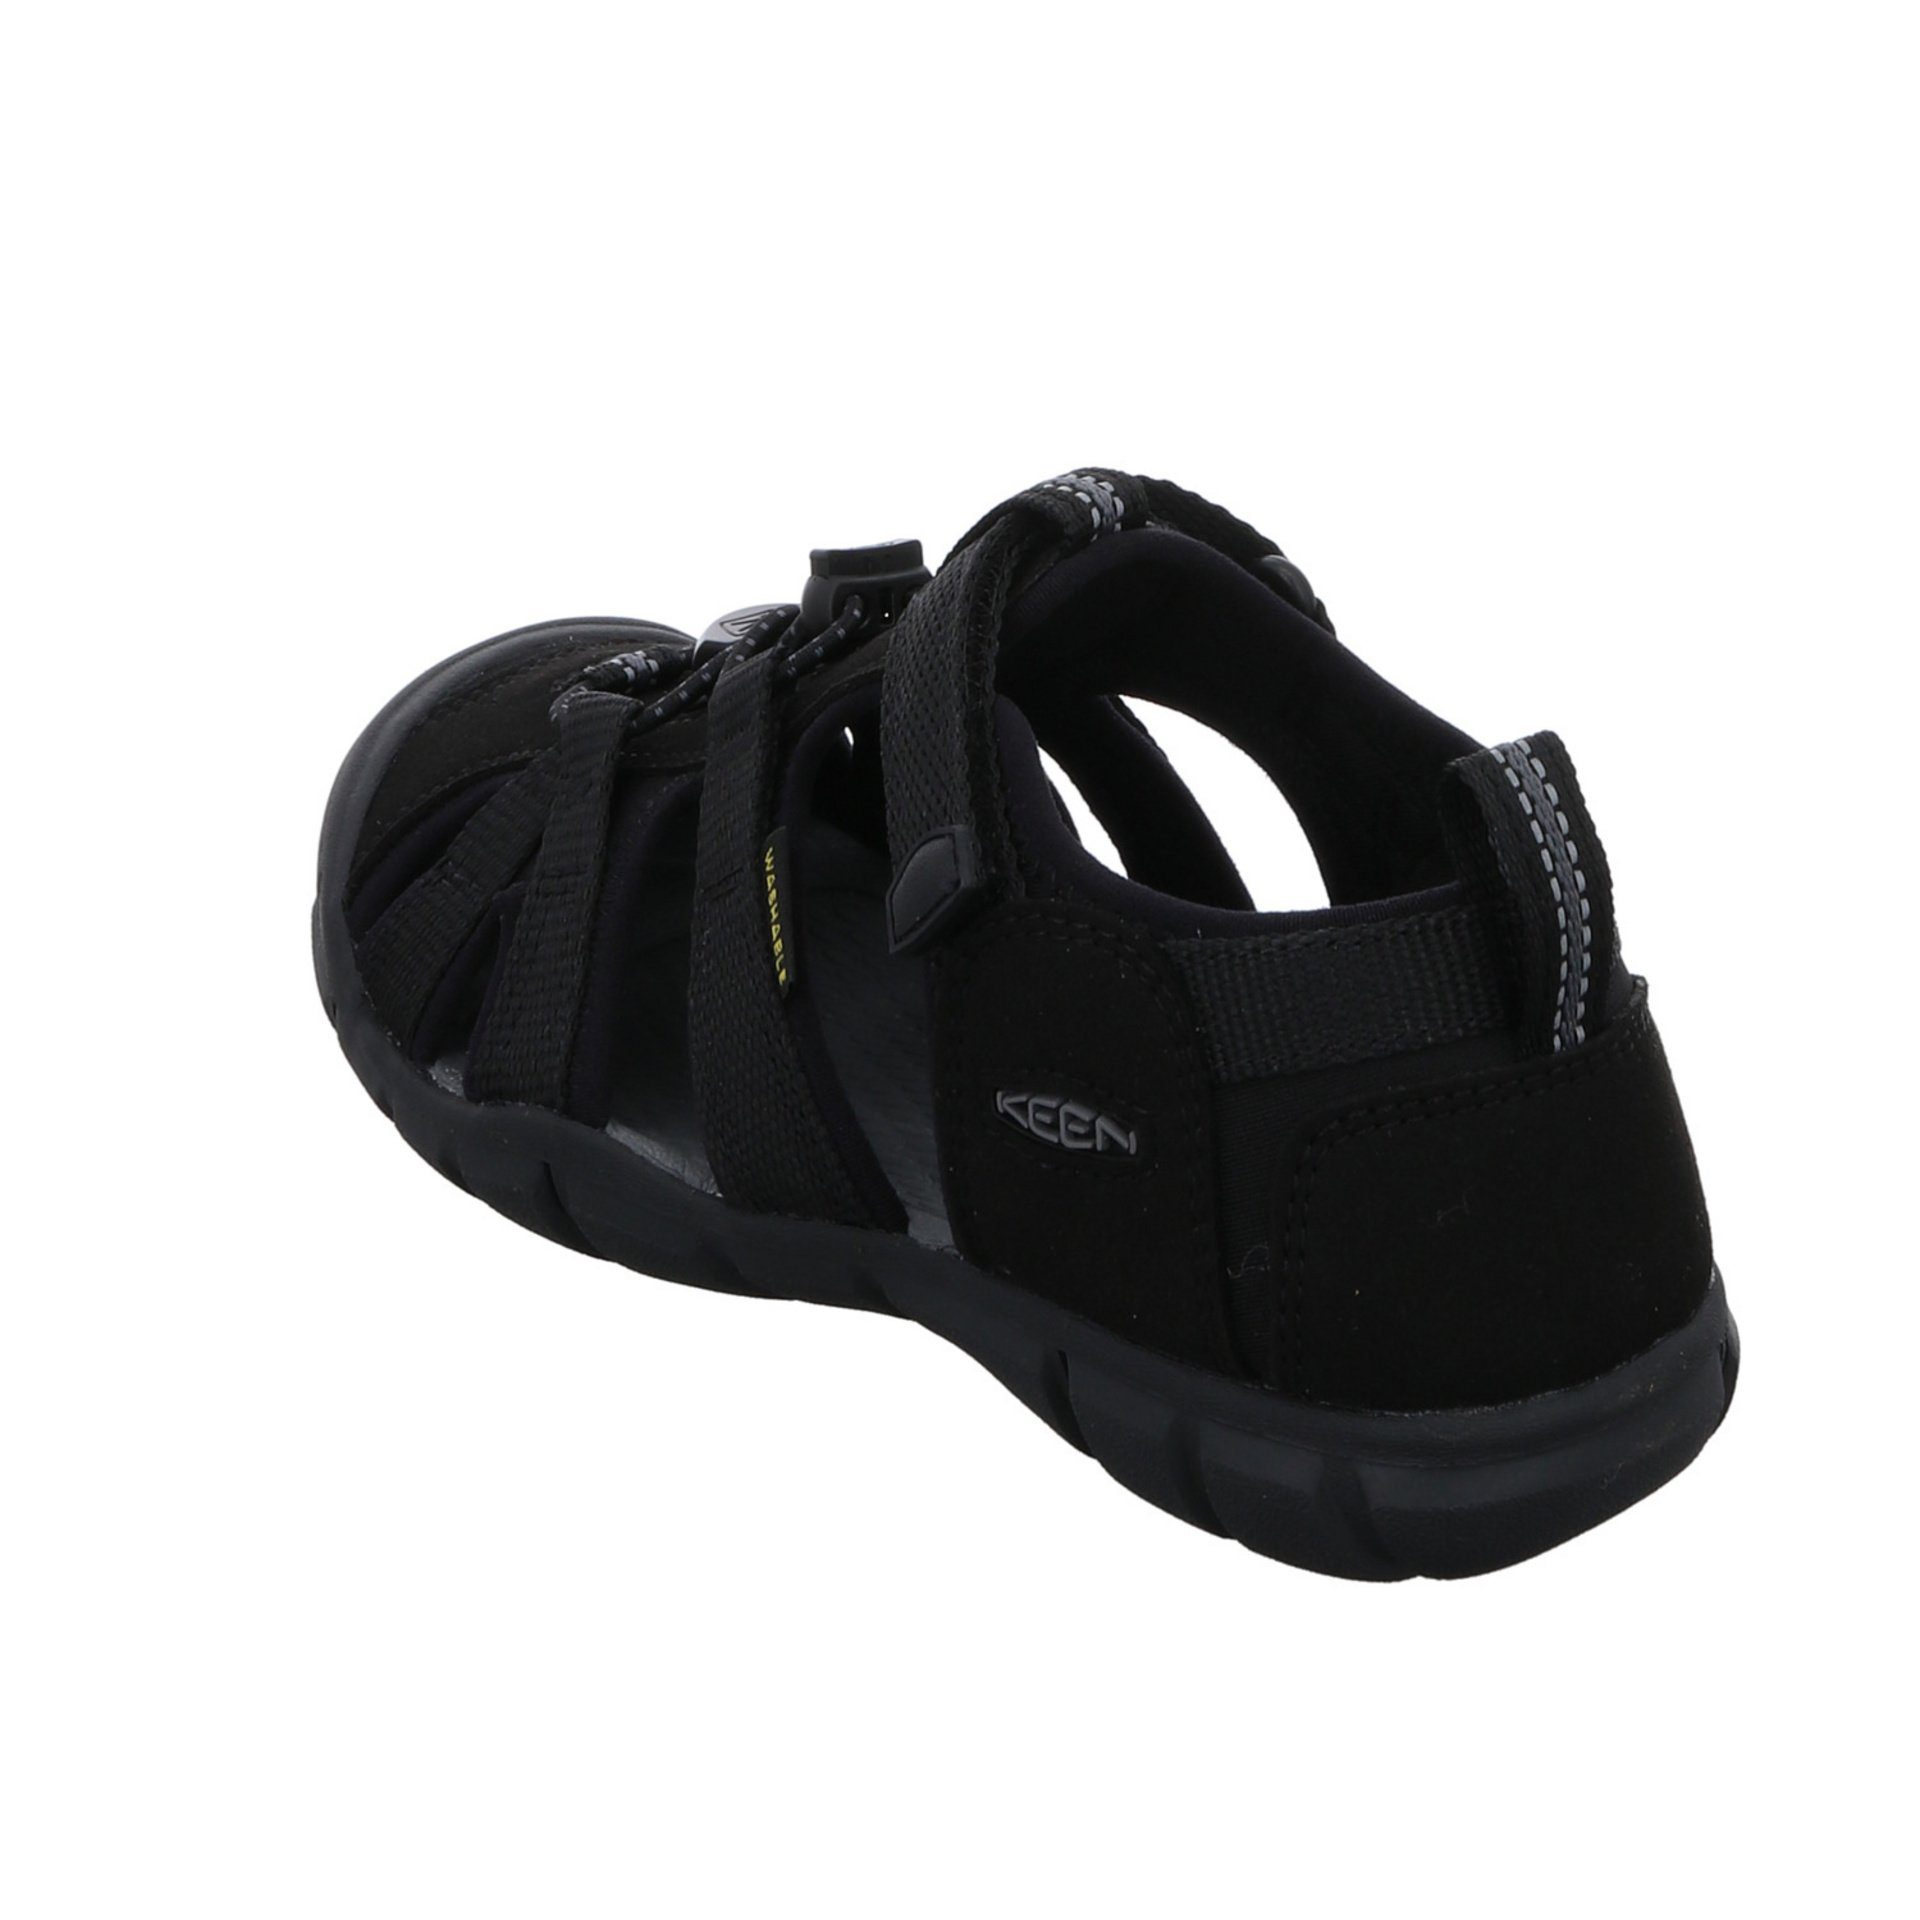 Sandale Textil Schuhe dunkel Jungen schwarz Keen Sandalen